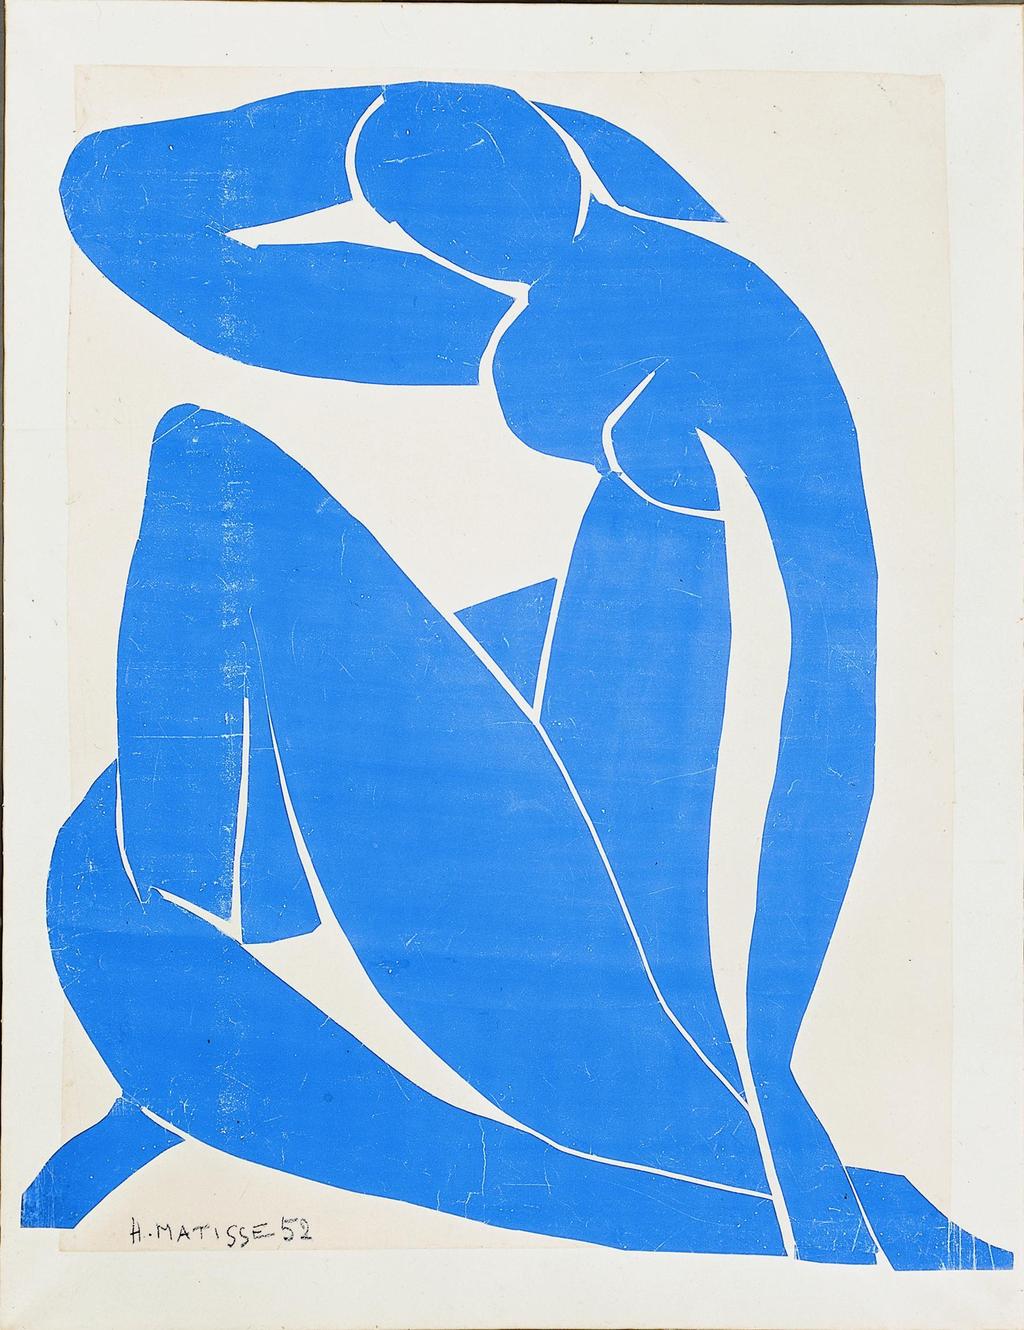 Henri Matisse, Nu bleu III: Nu bleu III, 1952, Cut paper and gouache glued on white canvas, 112 73.5 cm. Acquired in 1982.